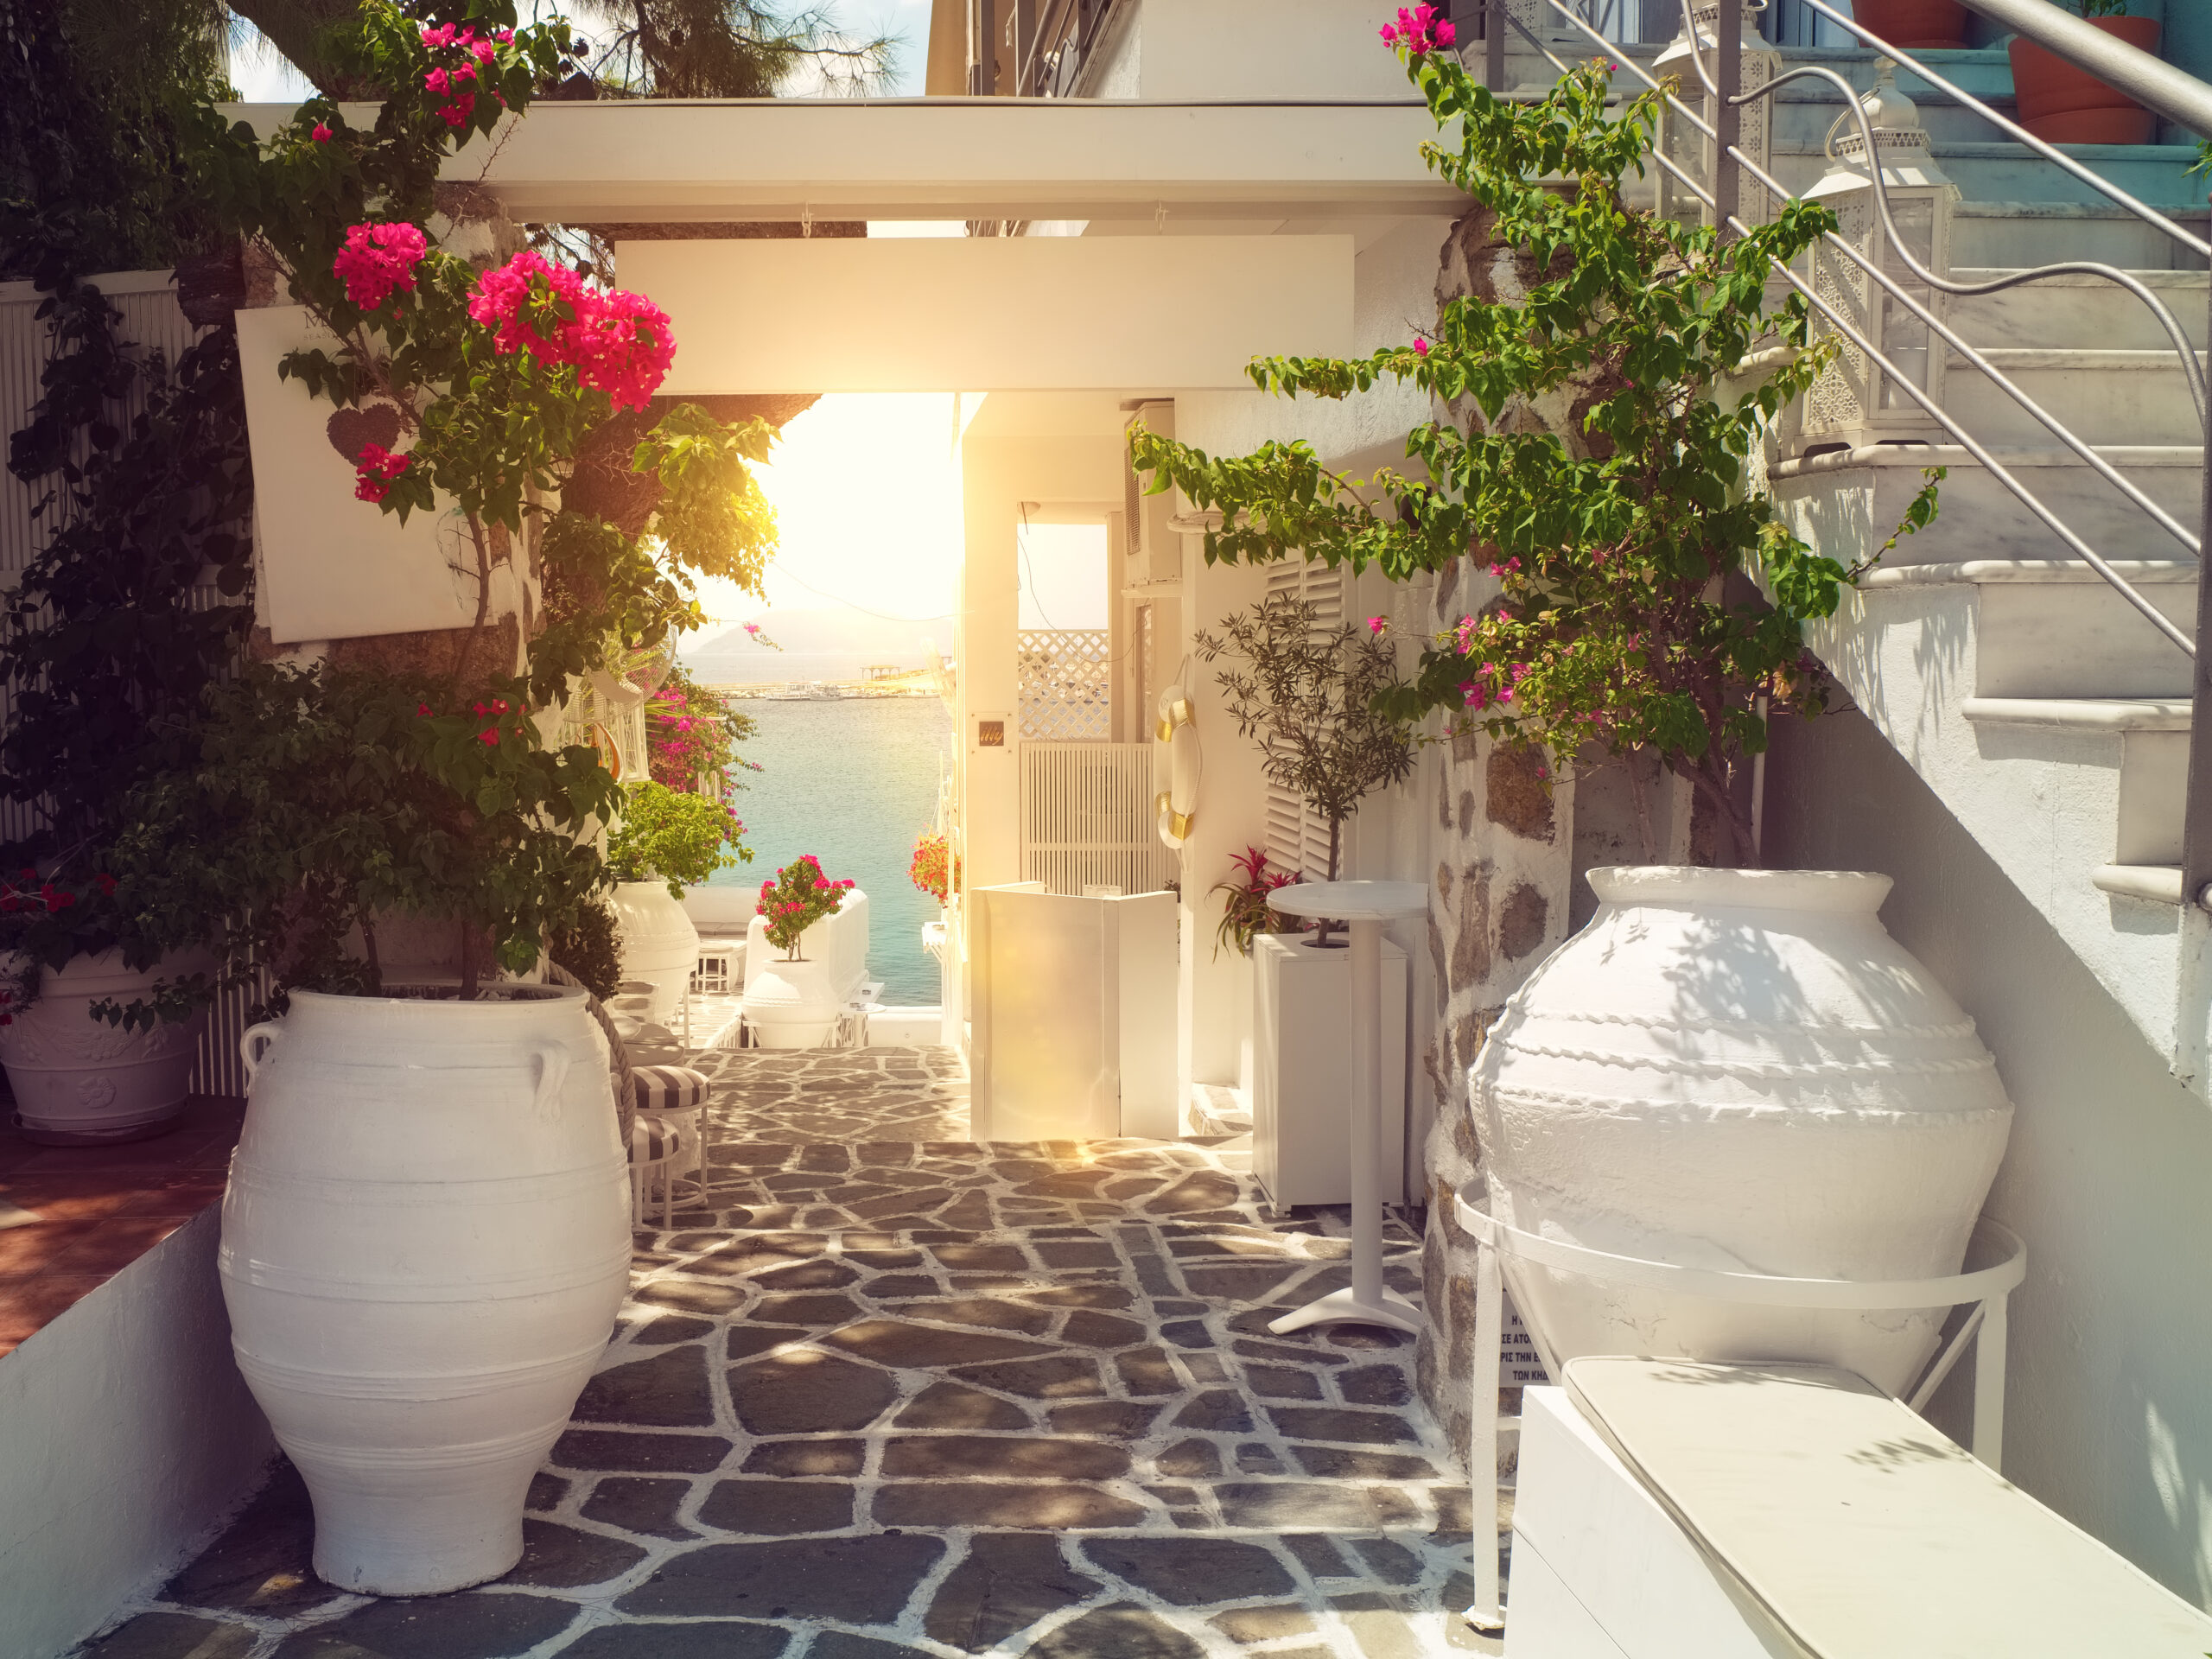 Traditional greek yard - airbnb